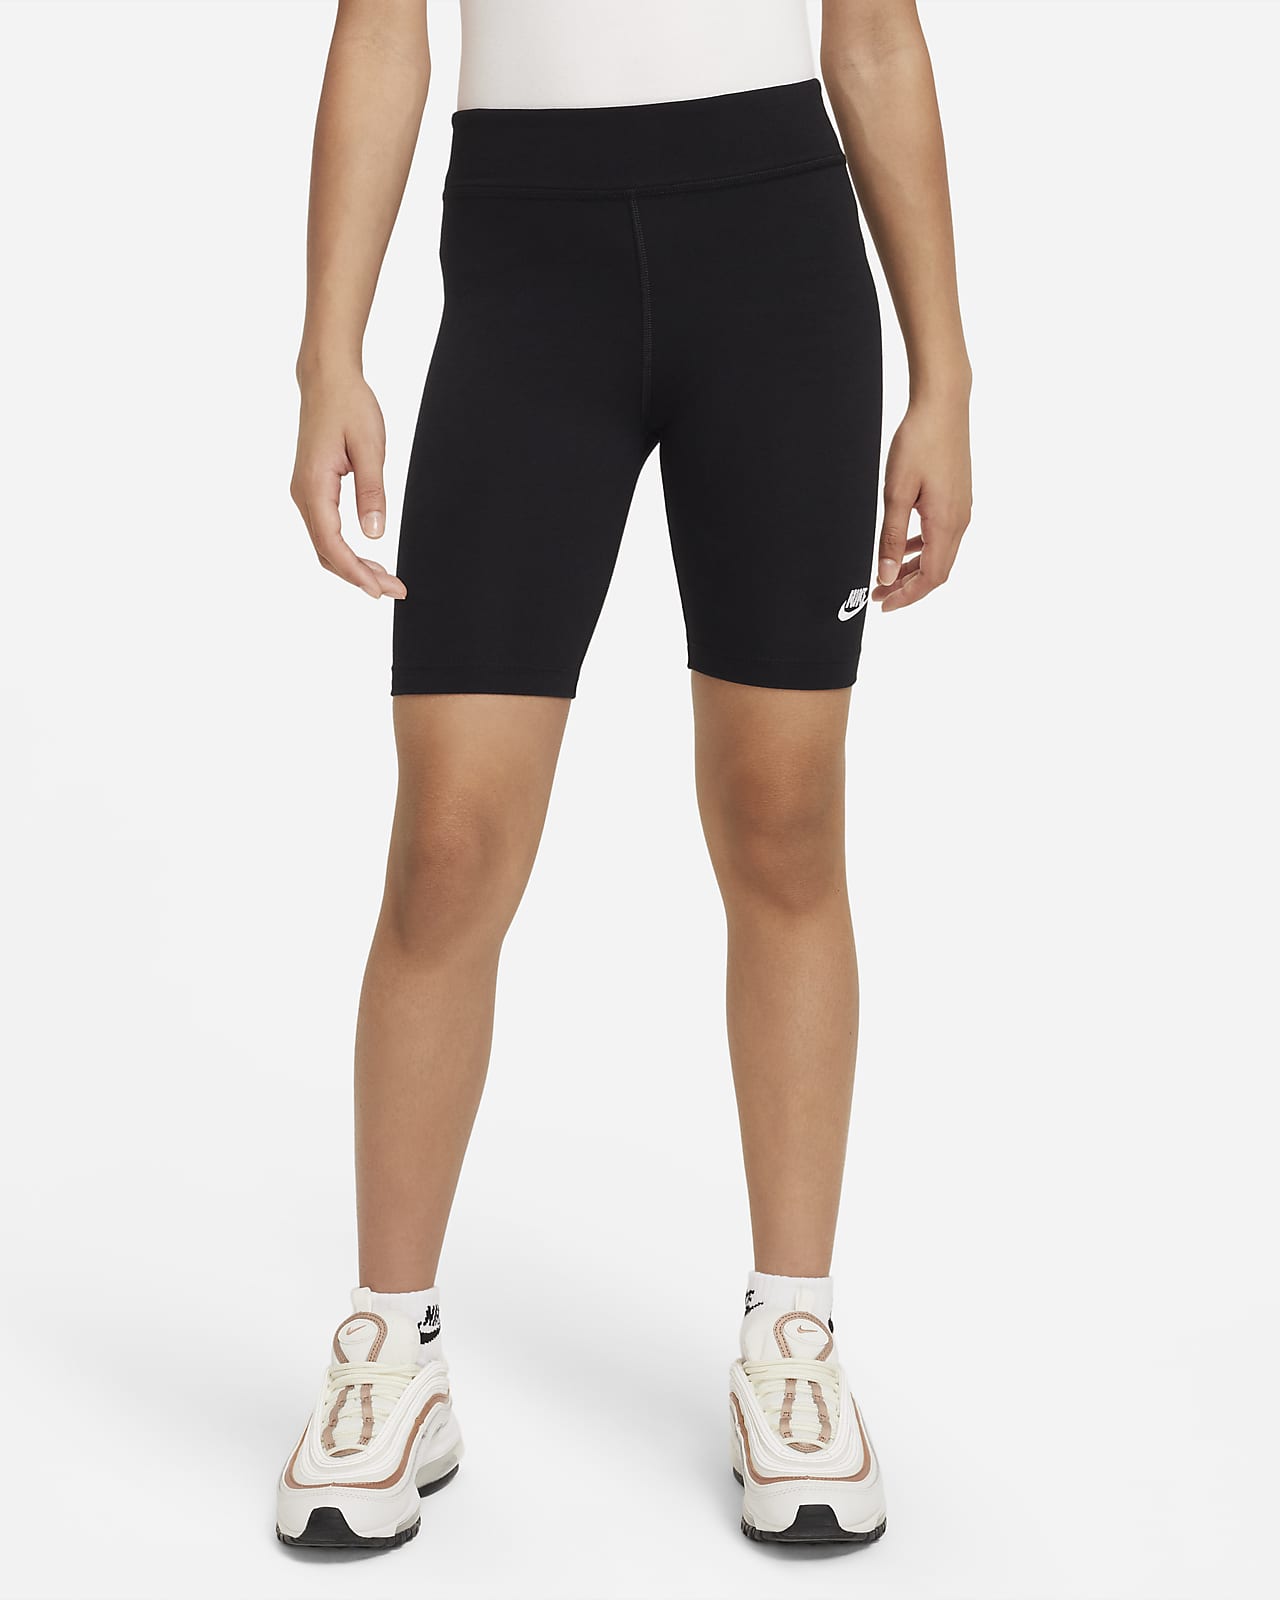 Nike bikeshorts voor meisjes (18 cm)